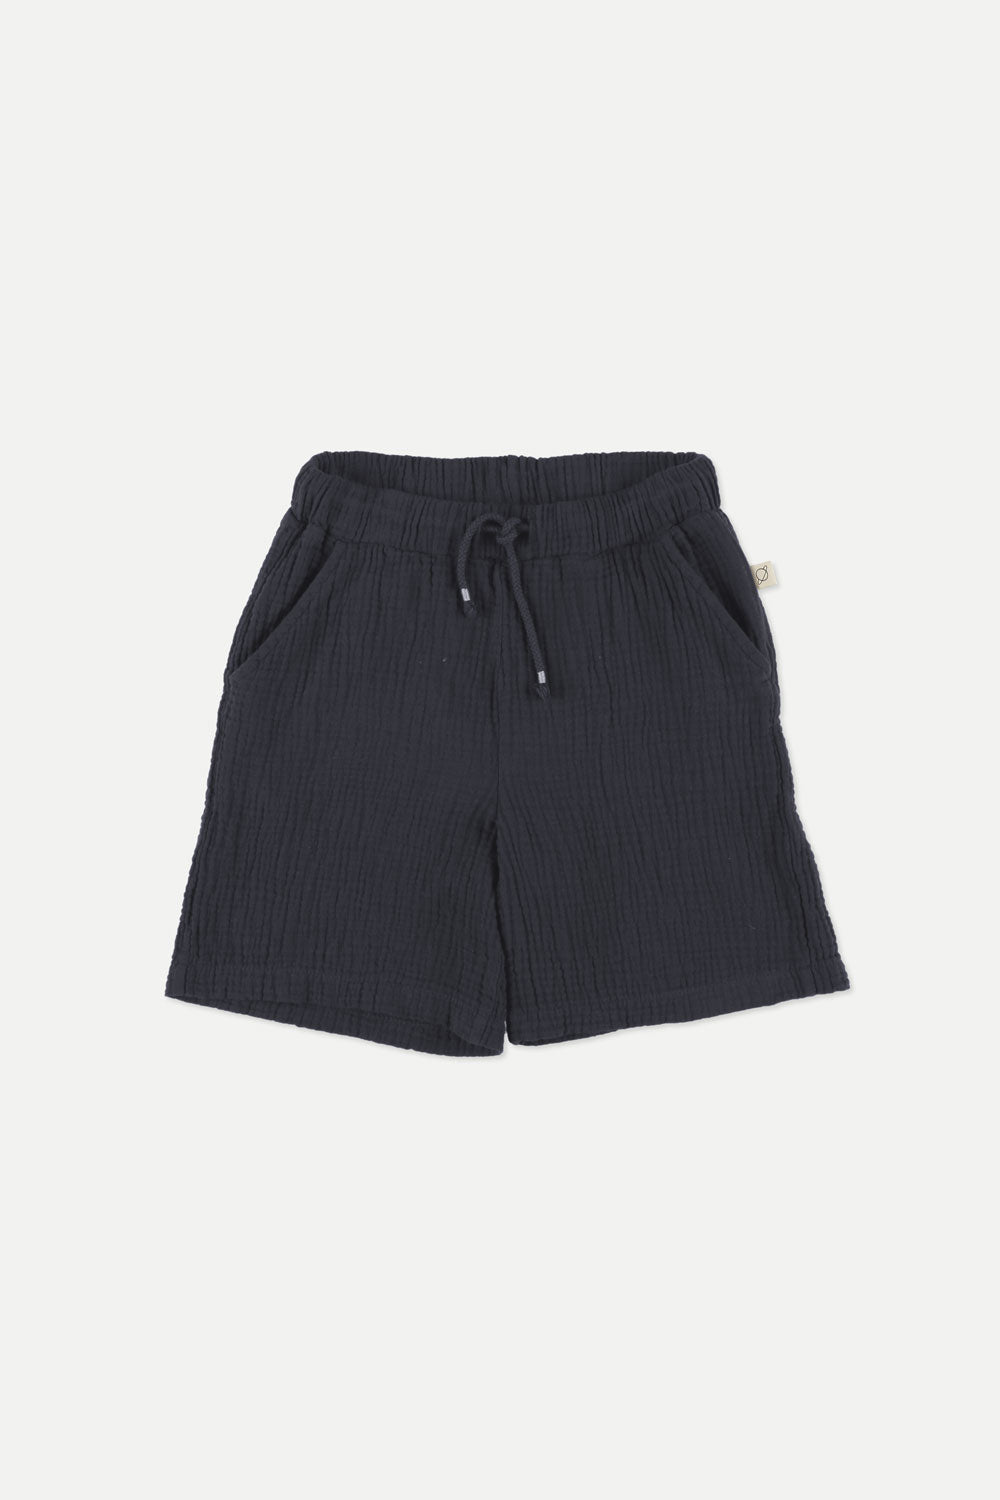 Shorts Boy Adri Navy - ملابس